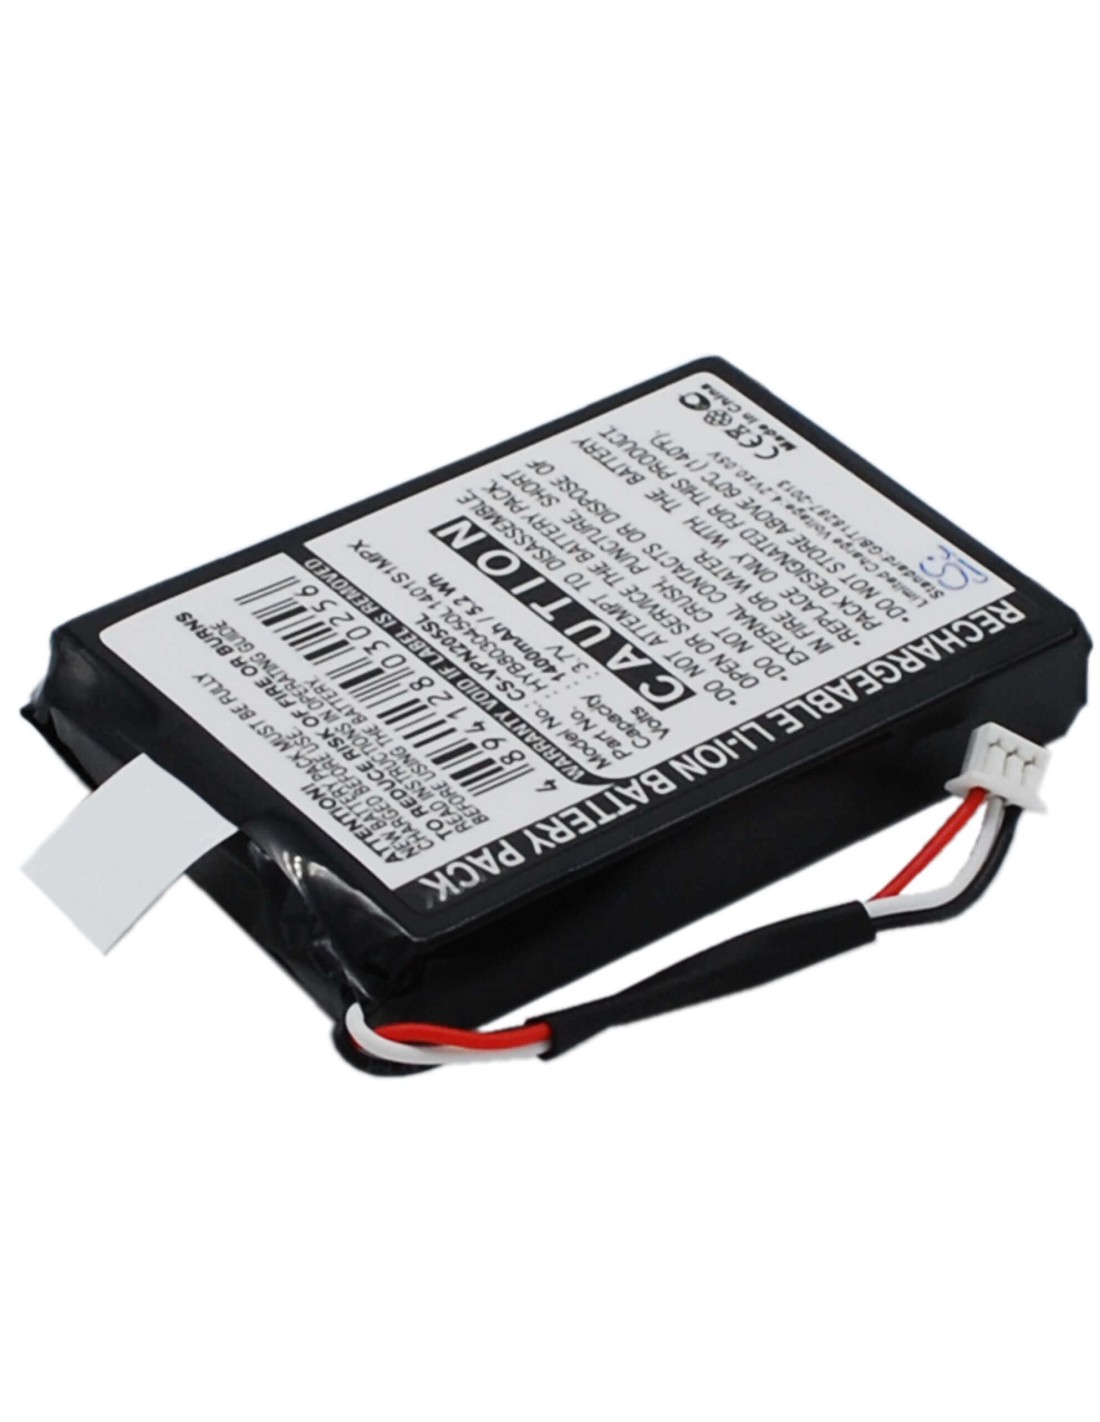 Battery for Vdo Dayton Ma3060, Pn1000, Pn2050 3.7V, 1400mAh - 5.18Wh